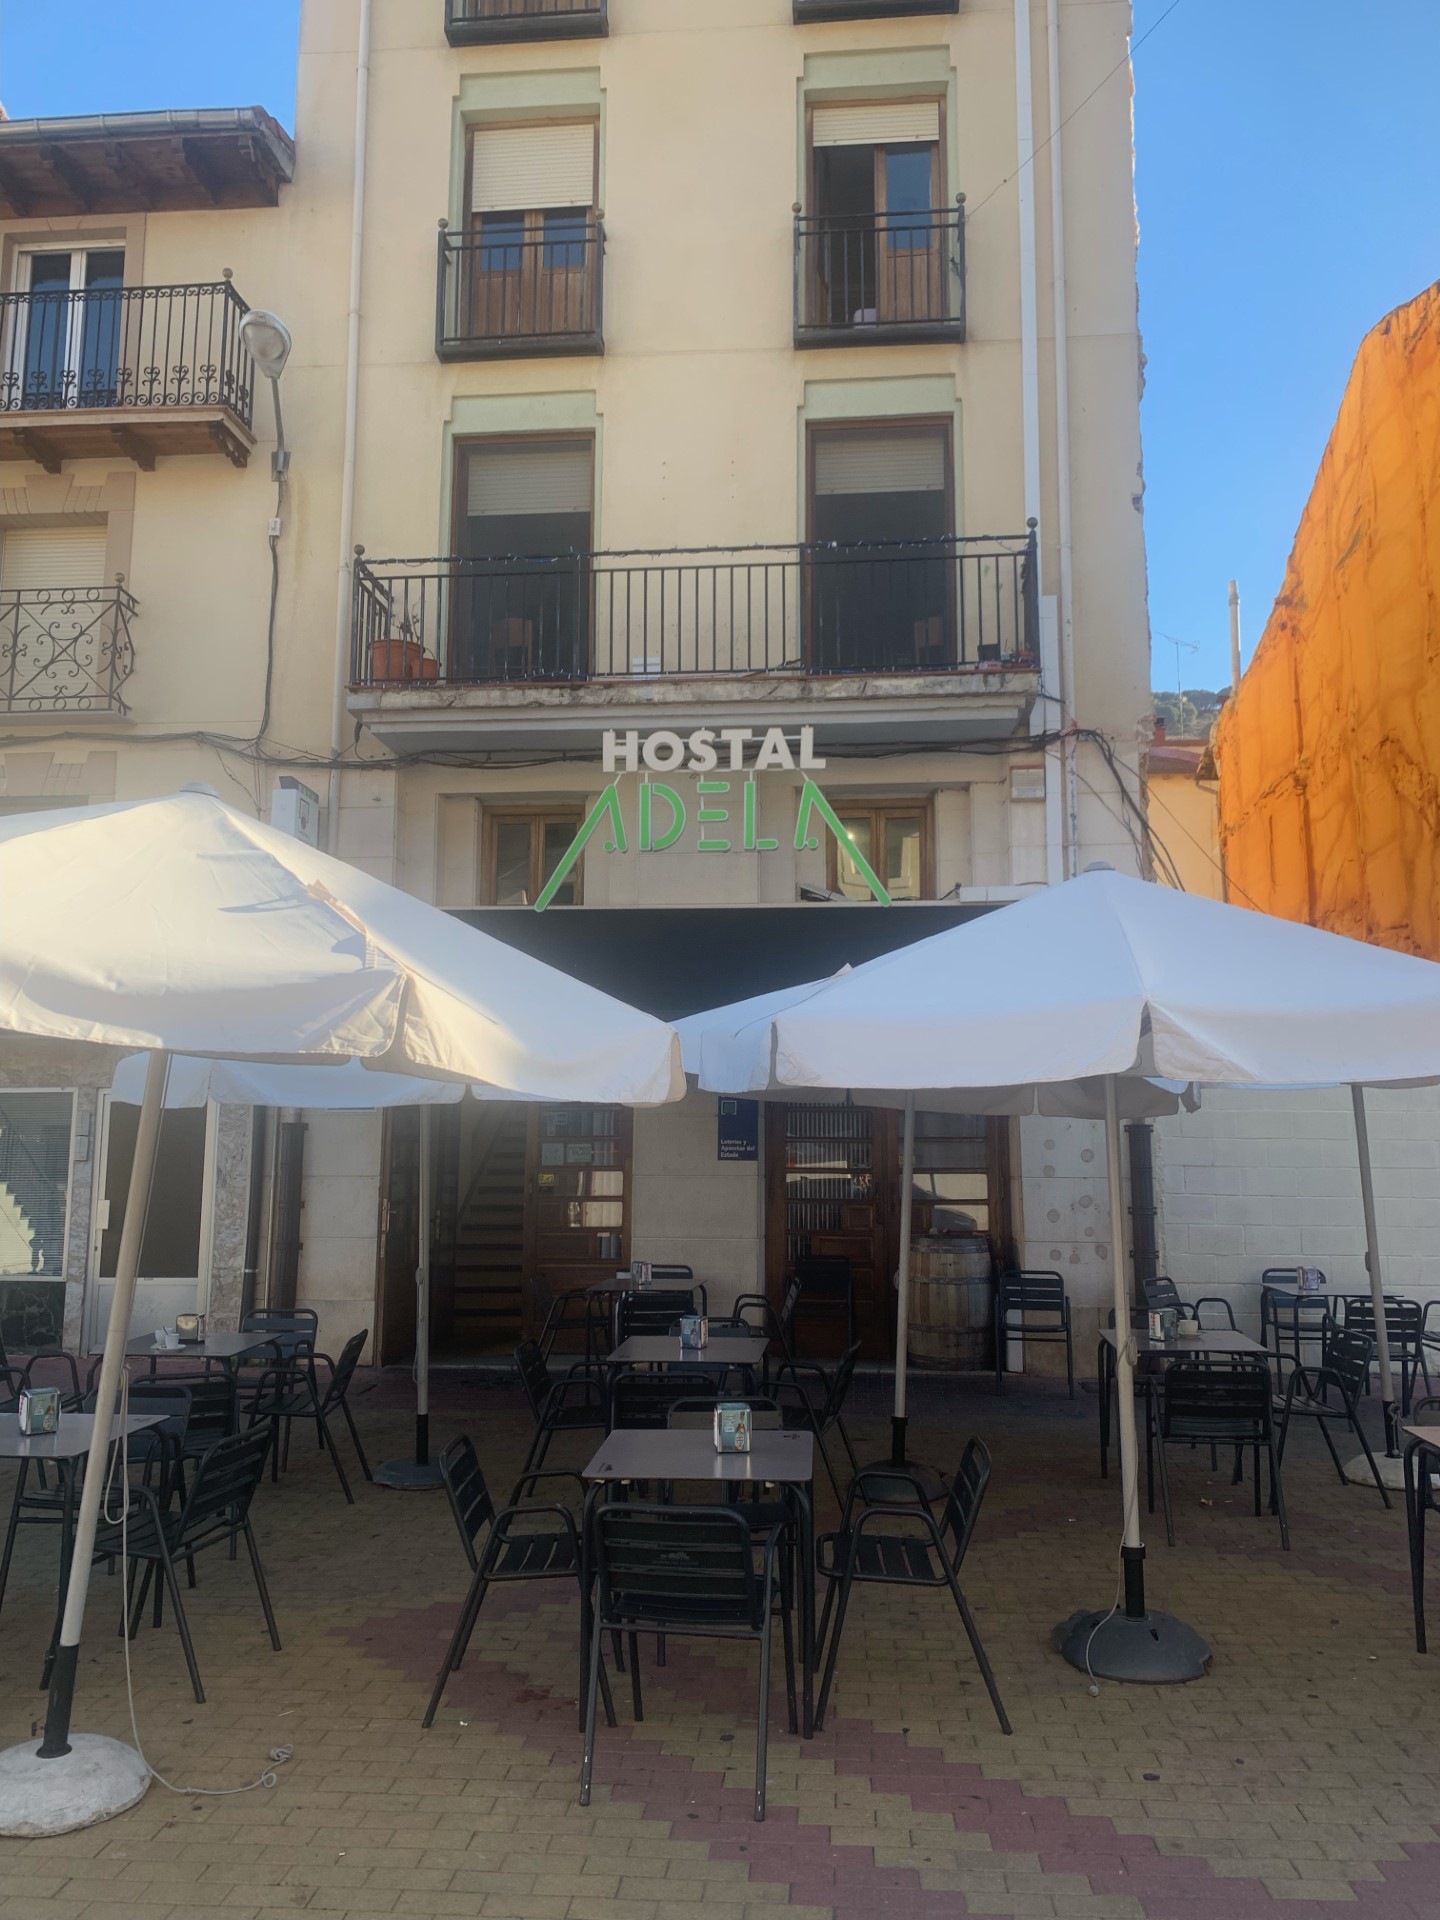 Restaurante / Hostal Adela